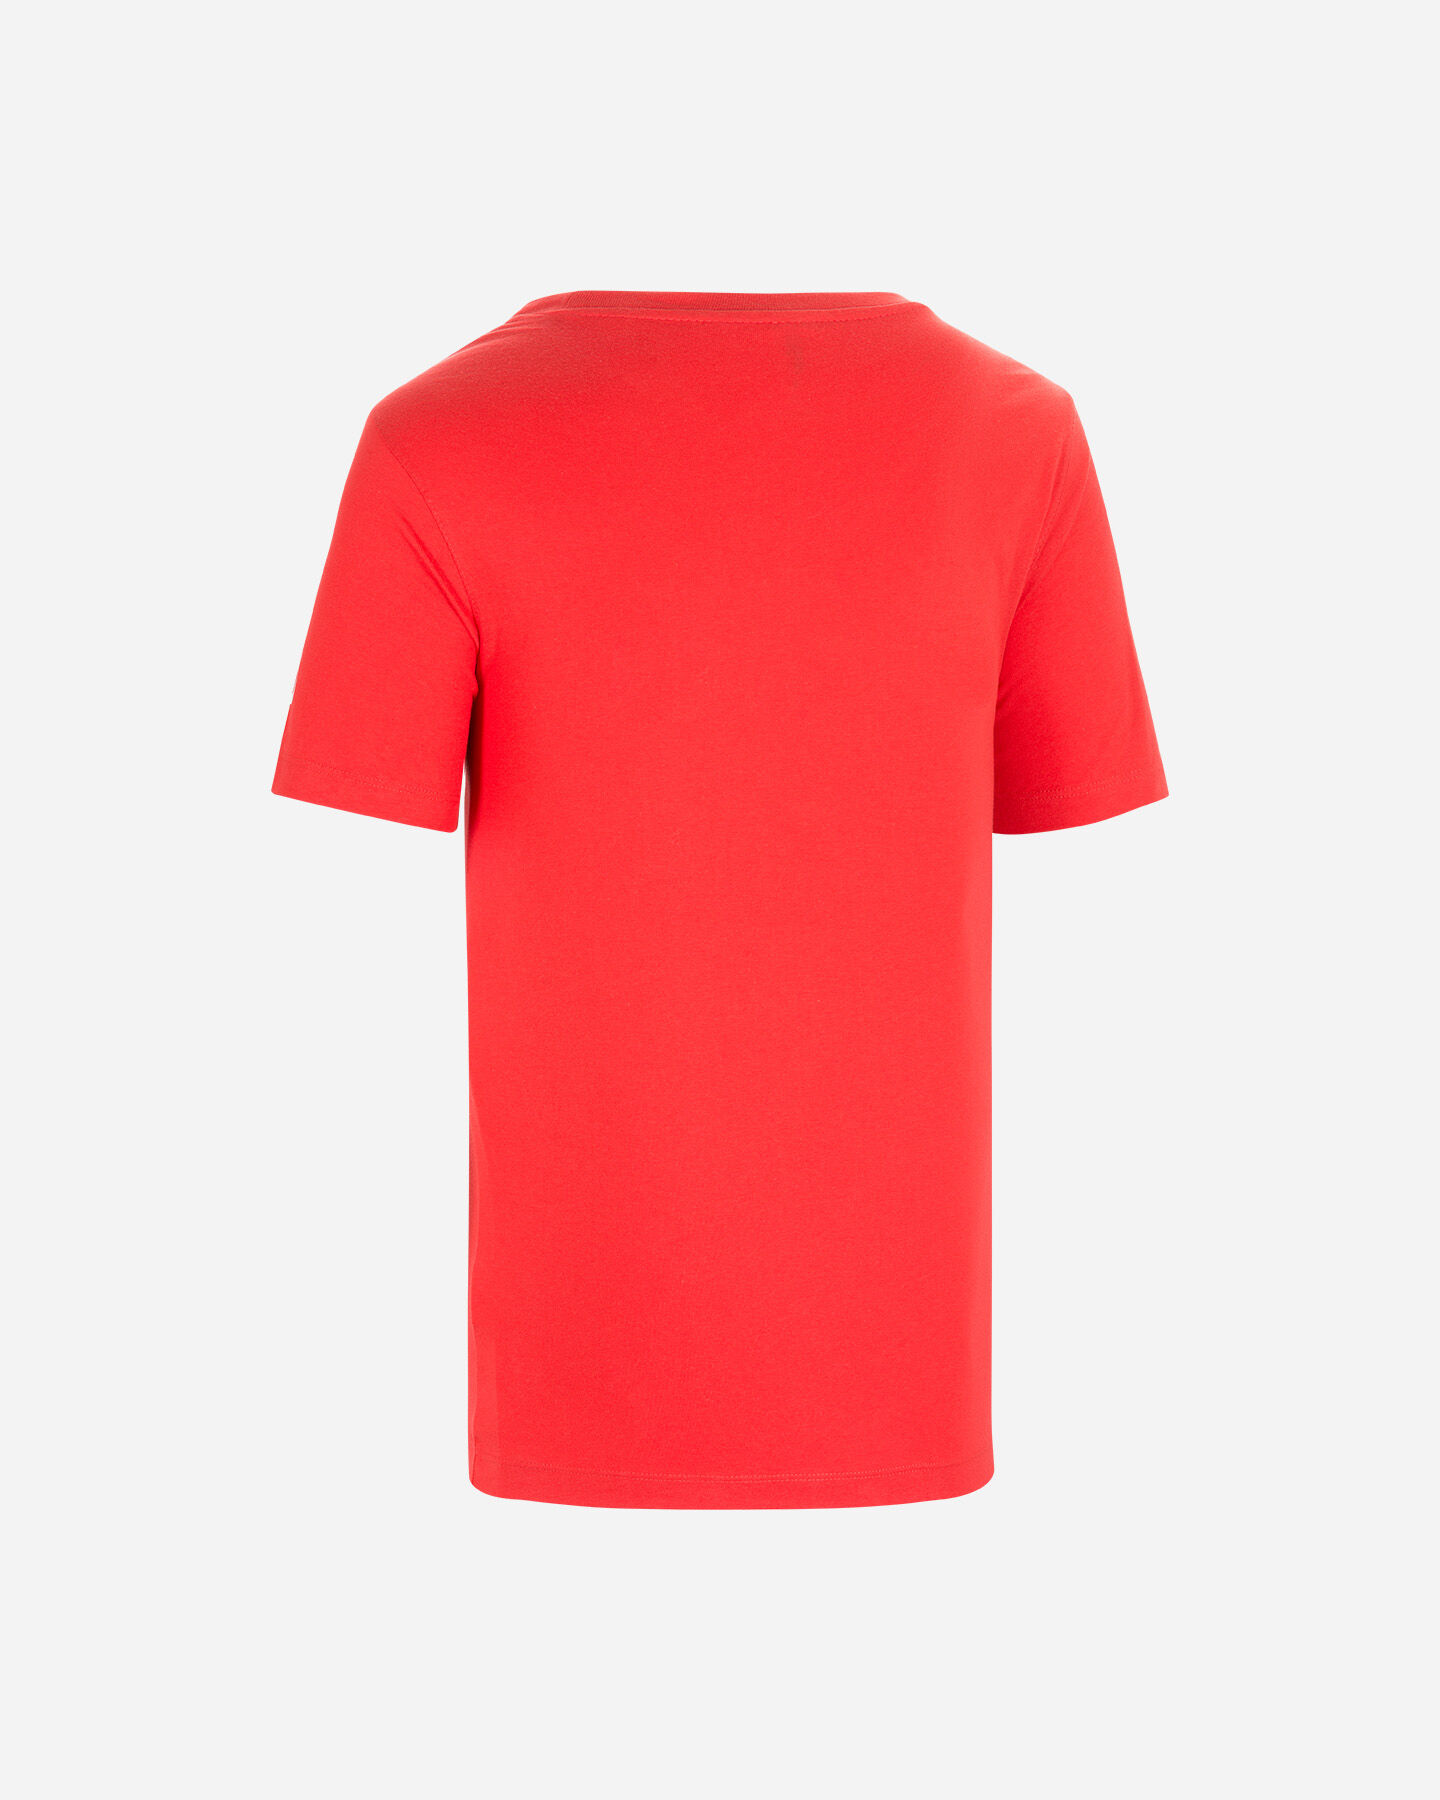  T-Shirt tennis WILSON T-SHIRT WILSON MBELA TECH RED M S5294969|UNI|S scatto 1